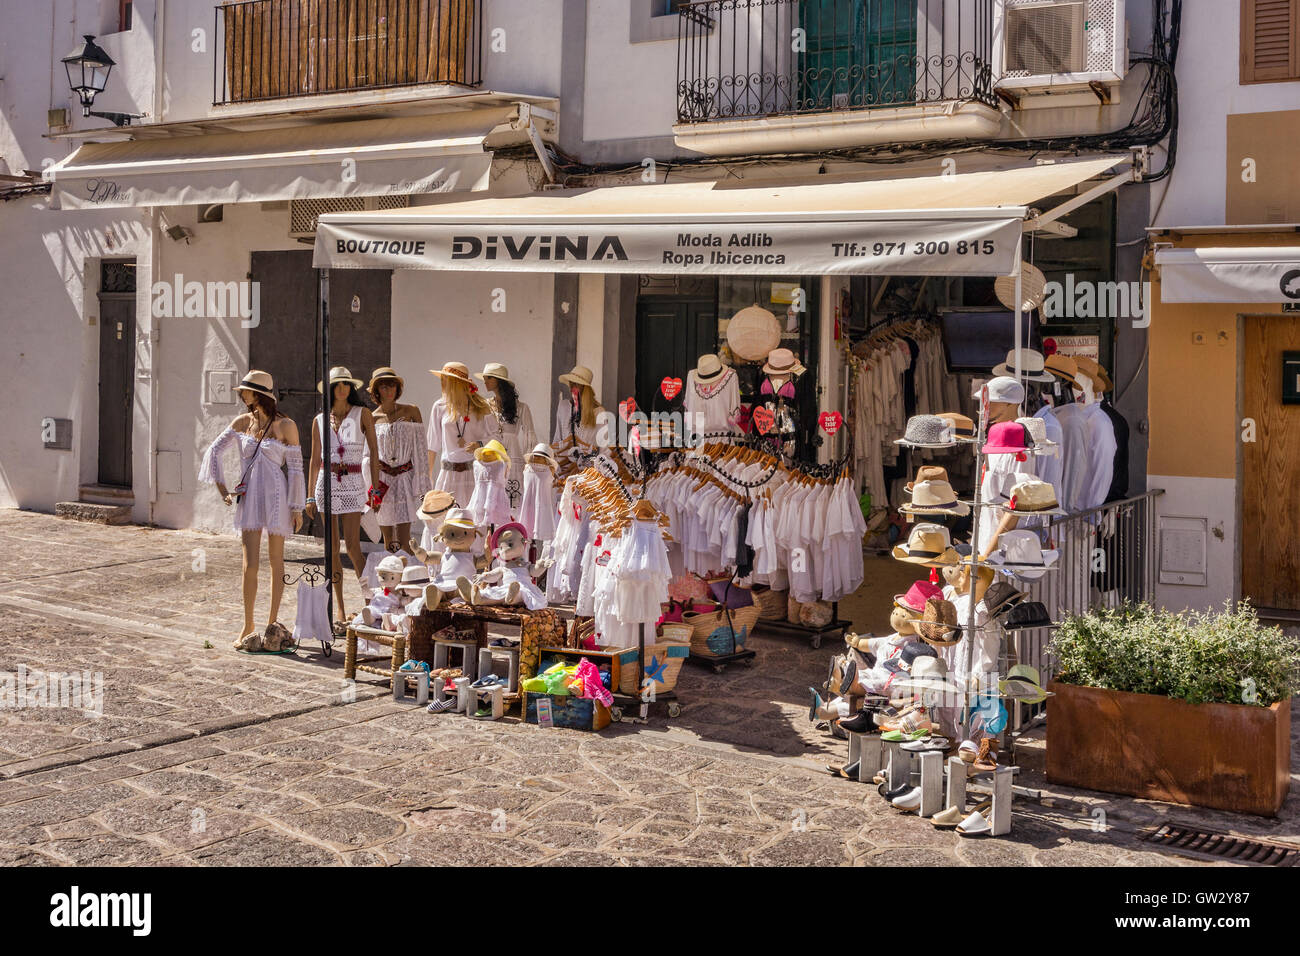 Divina boutique, vendita womens e abbigliamento per bambini in zona vecchia di Ibiza, Ibiza, Spagna. Foto Stock